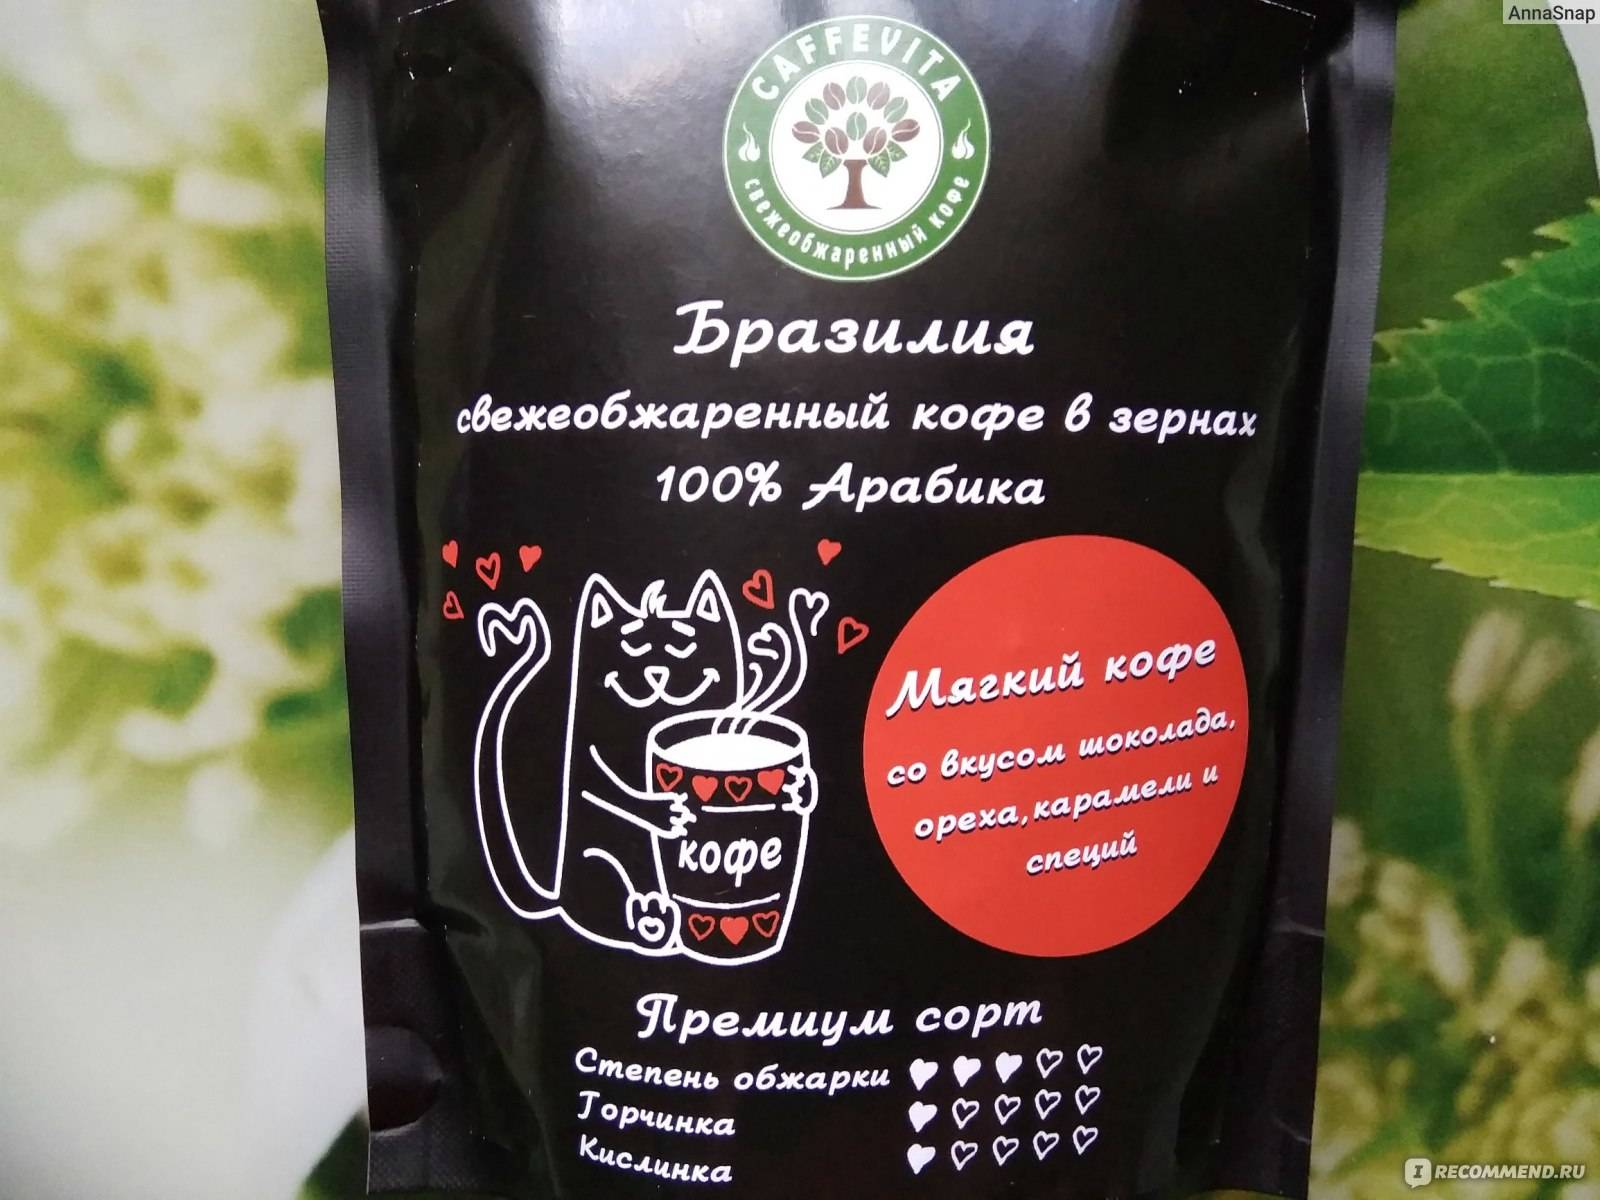 Заказать кофе - рейтинг компаний в москве 2021